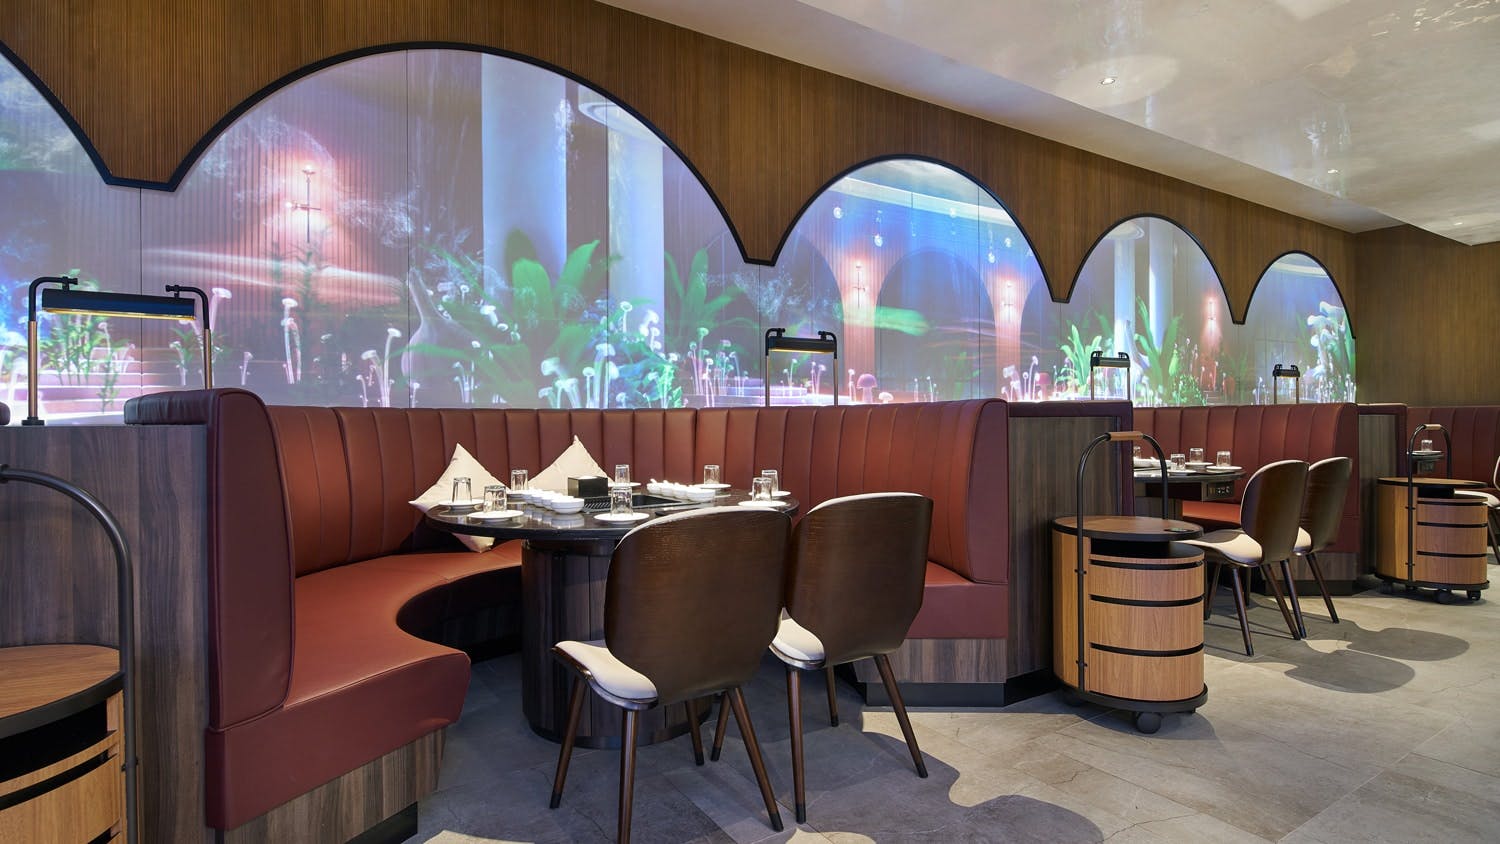 Numéro d'image 60 de la section actuelle de Michelin-starred restaurant Etoile in Stockholm relies on DKTN design de Cosentino France